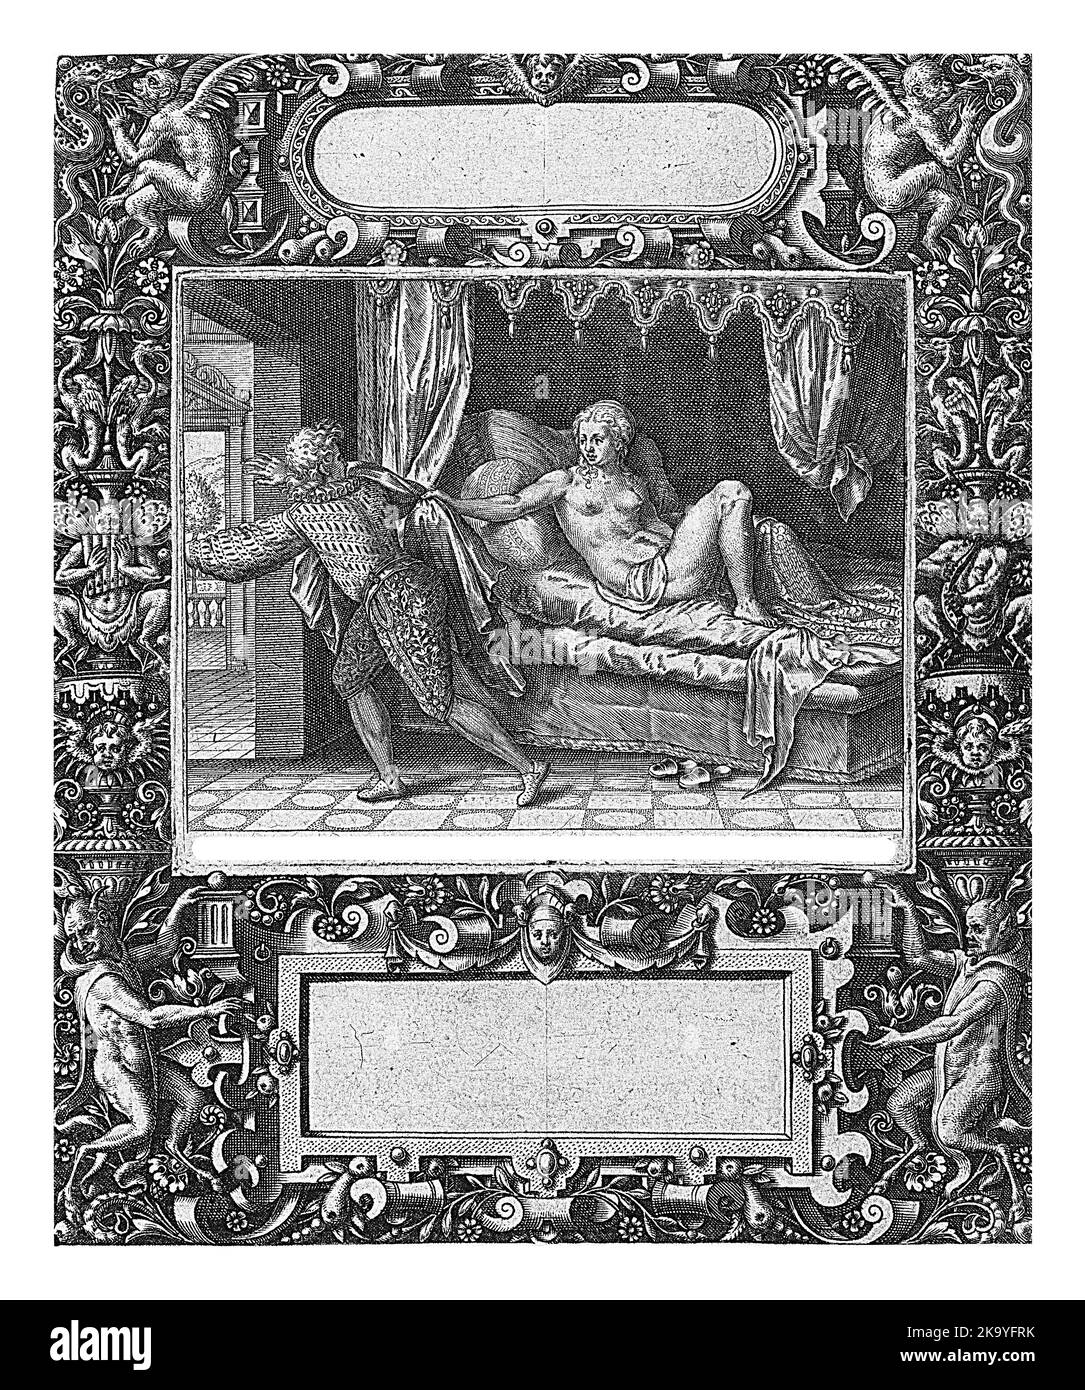 Rahmen mit länglicher Kartusche mit abgerundeten Seiten in der Mitte oben, Theodor de Bry, 1593 Rechteckkartusche in der Mitte unten. Oben links und Stockfoto